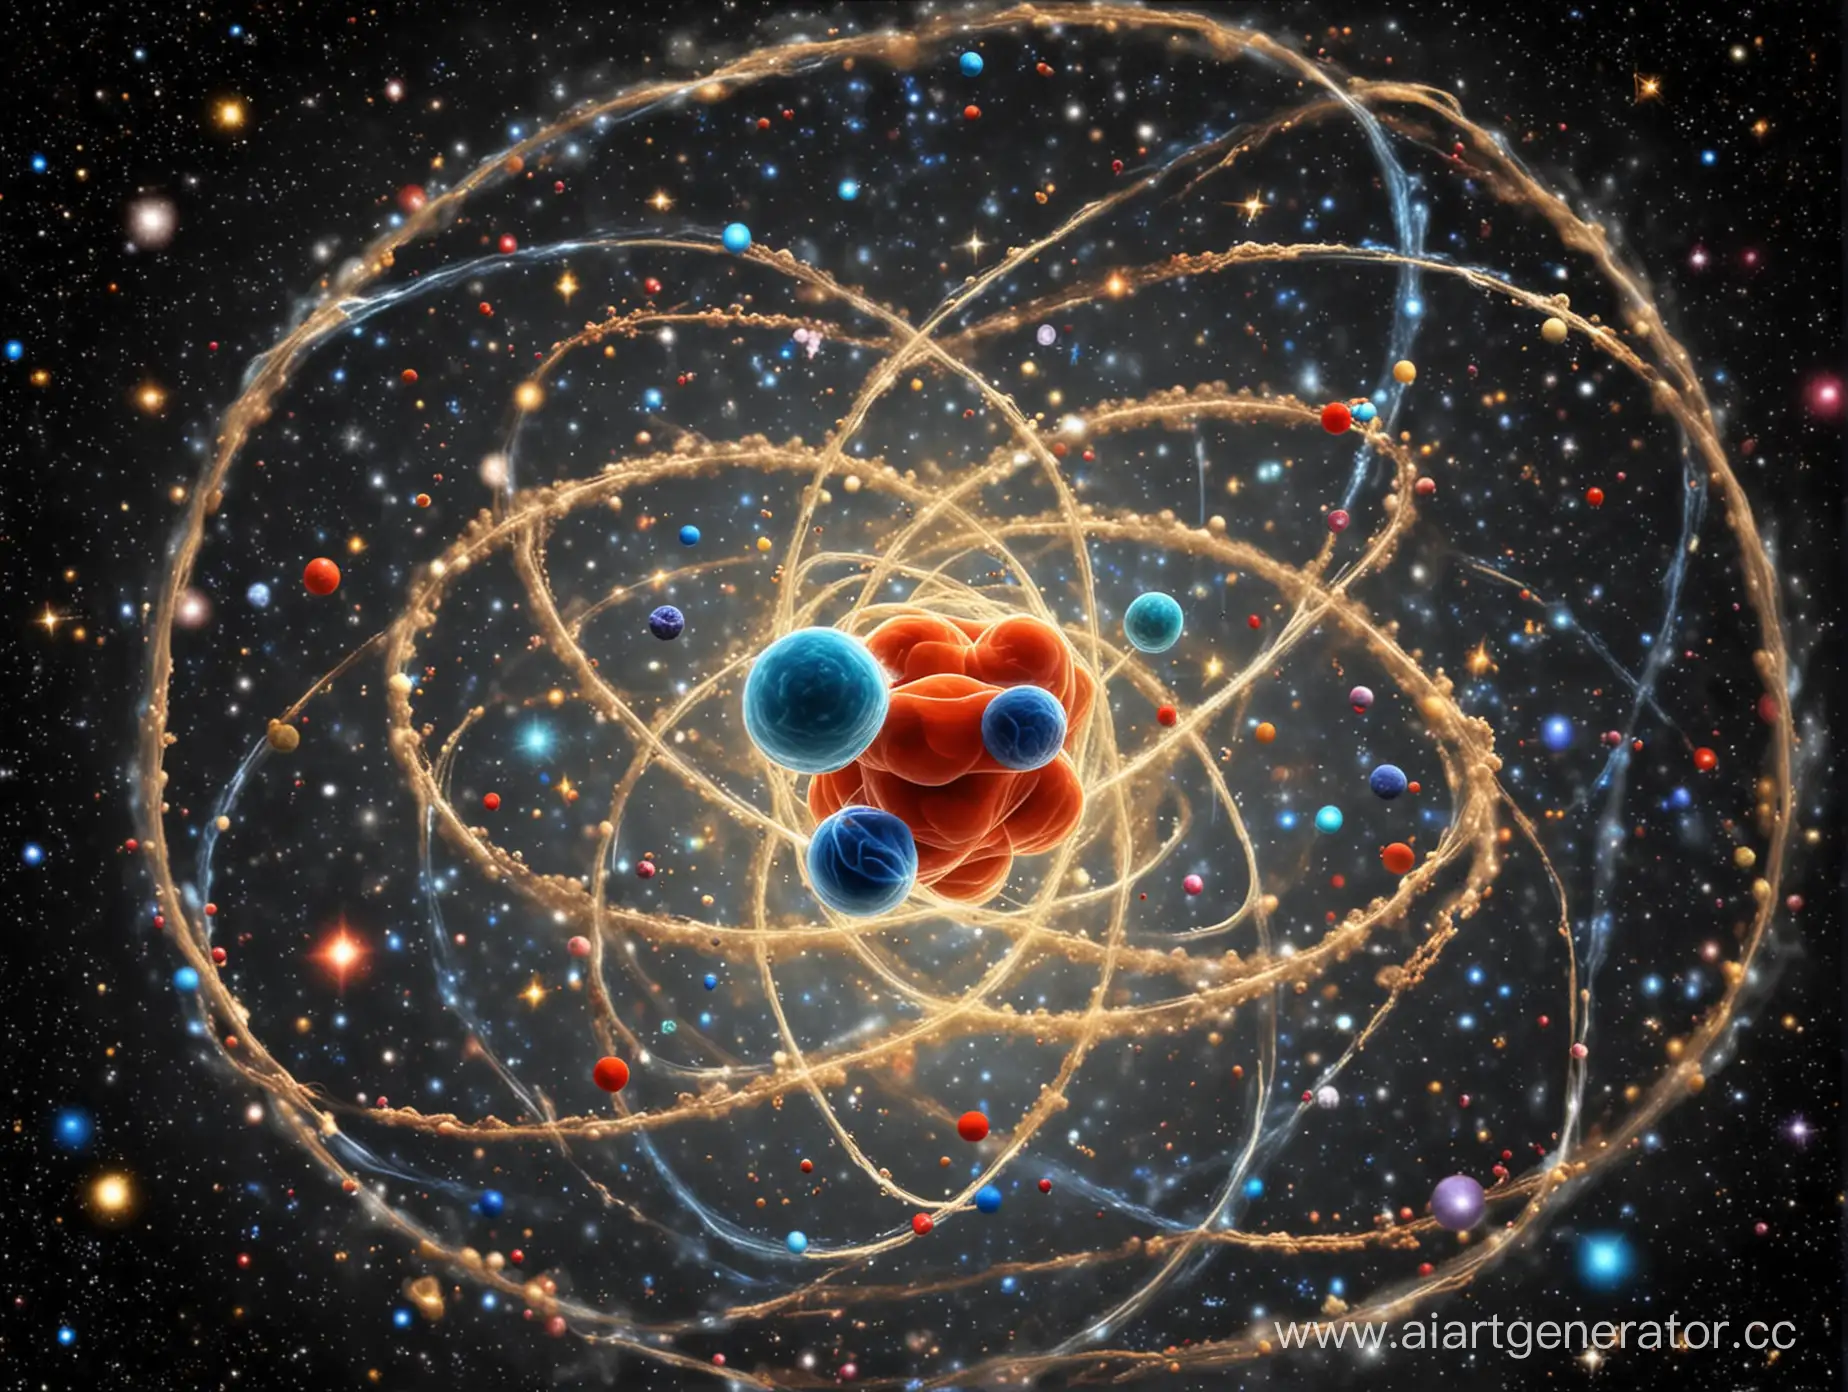 Атомы, составляющие человеческое тело, существовали с начала Вселенной